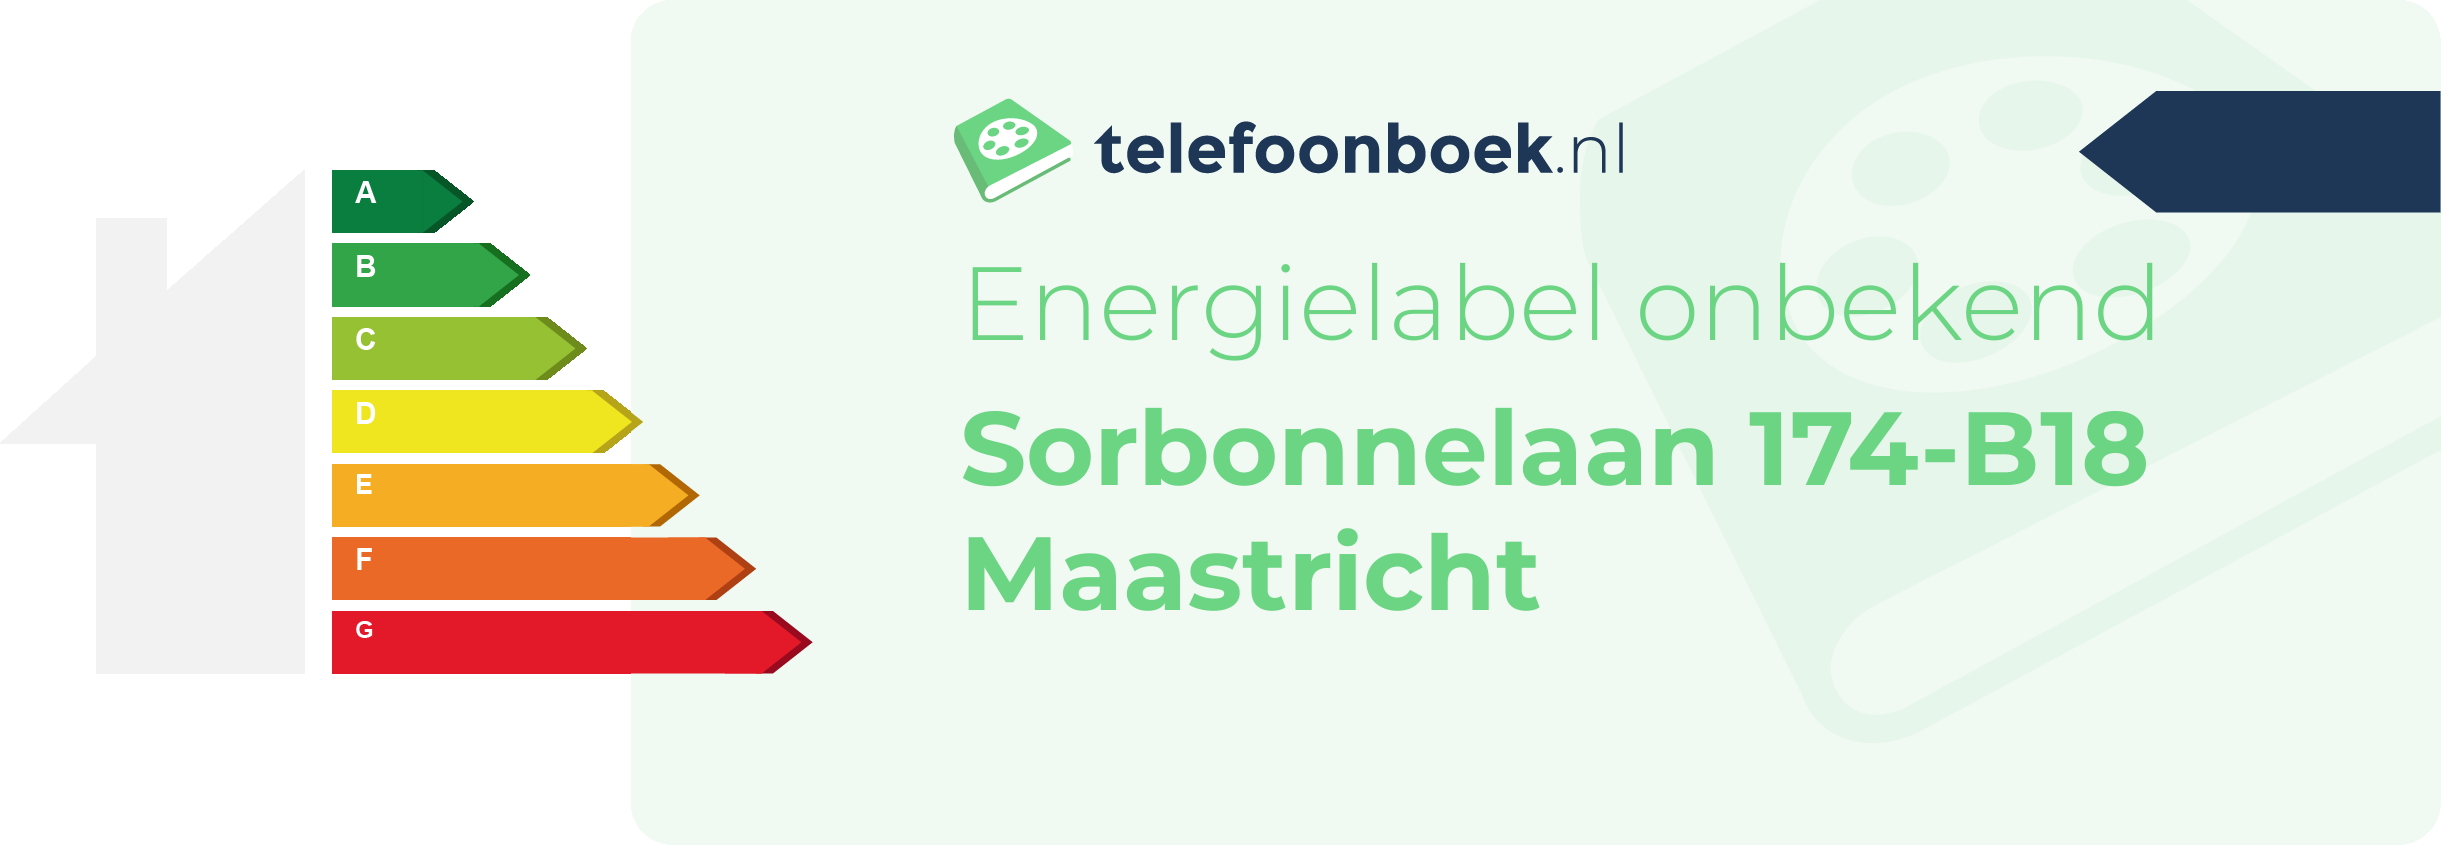 Energielabel Sorbonnelaan 174-B18 Maastricht